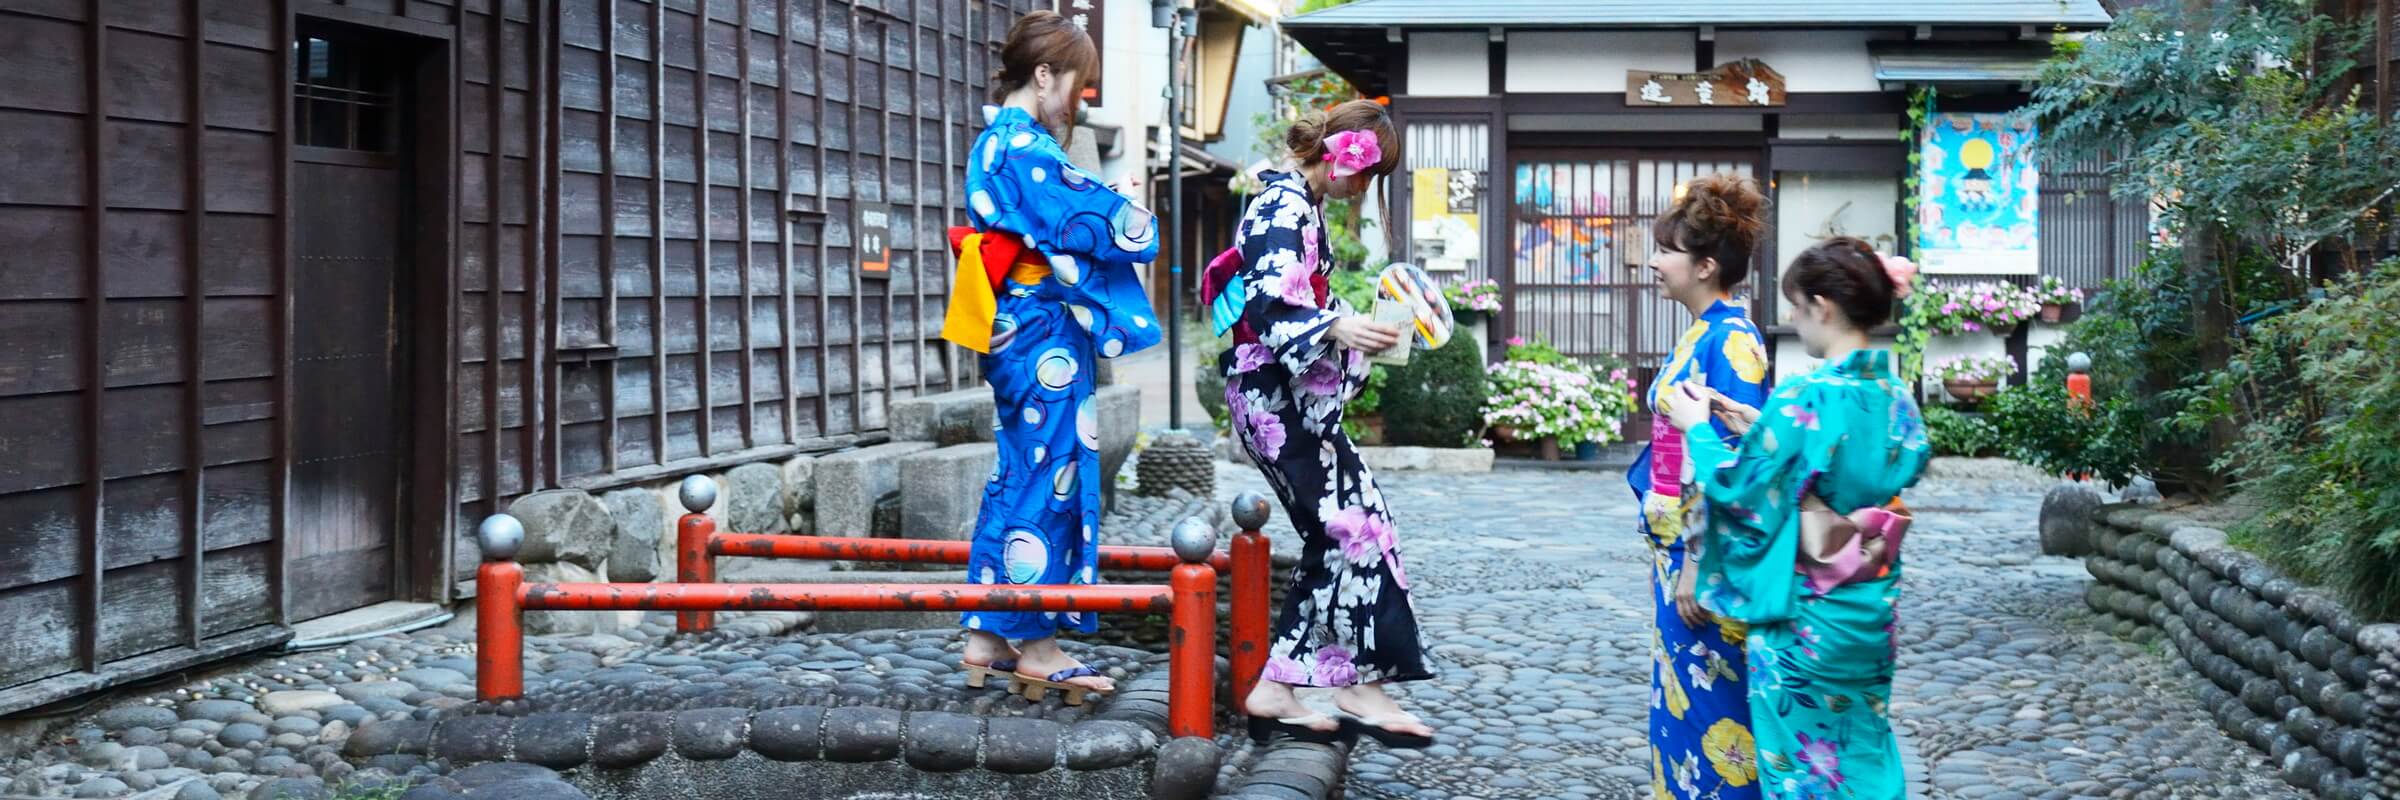 Geishas sind japanische Unterhaltungskünstlerinnen, die traditionelle japanische Künste darbieten.